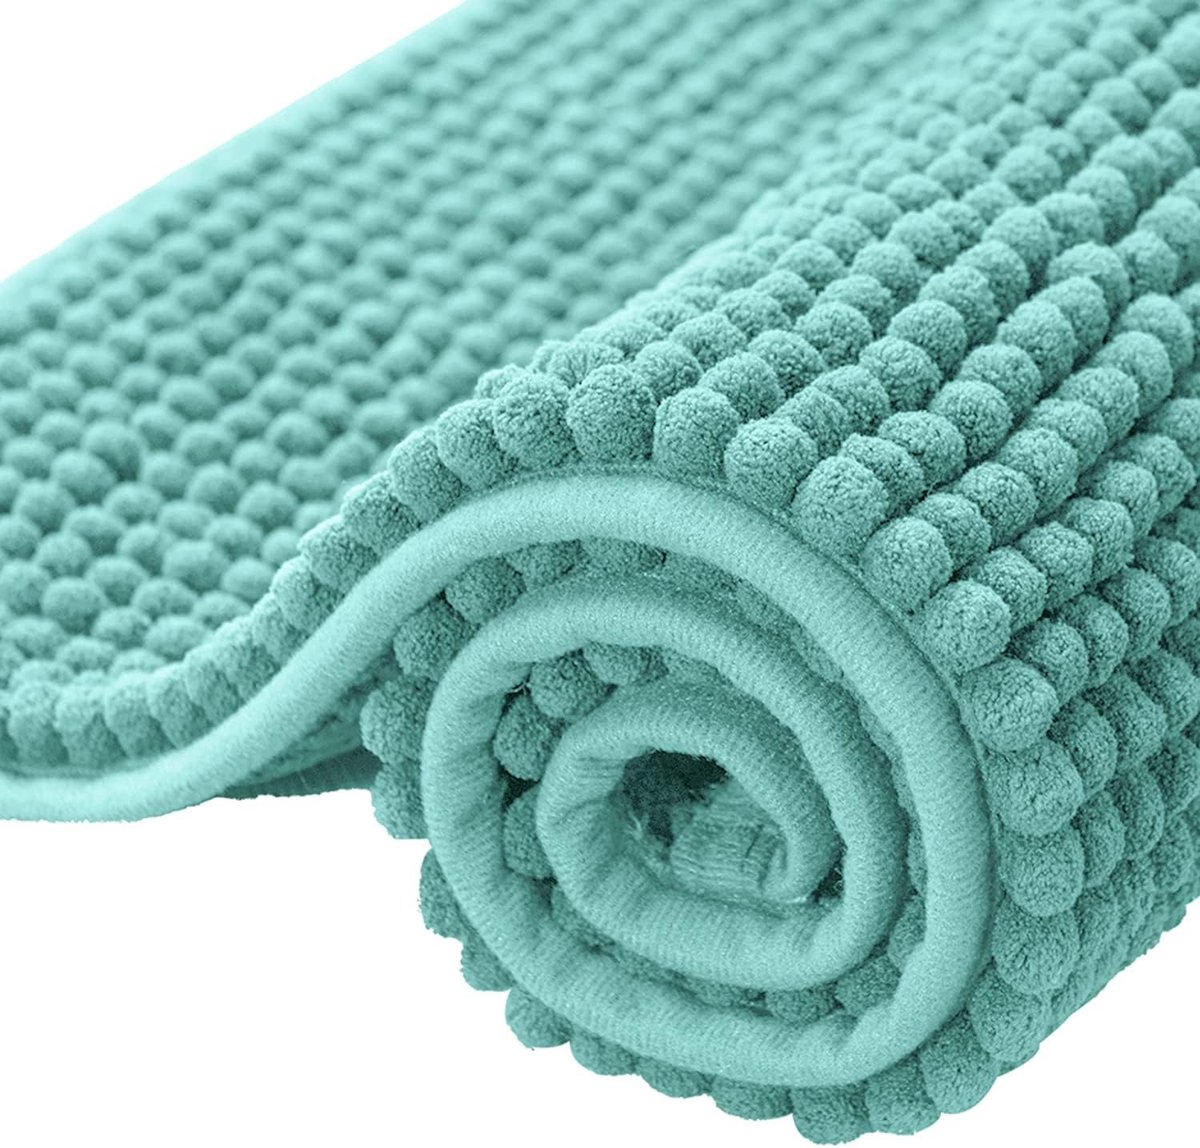 badmat, antislip badmat, absorberend badkamertapijt, zachte badmat met waterabsorberend materiaal (50 x 80 cm, lichtgroen)